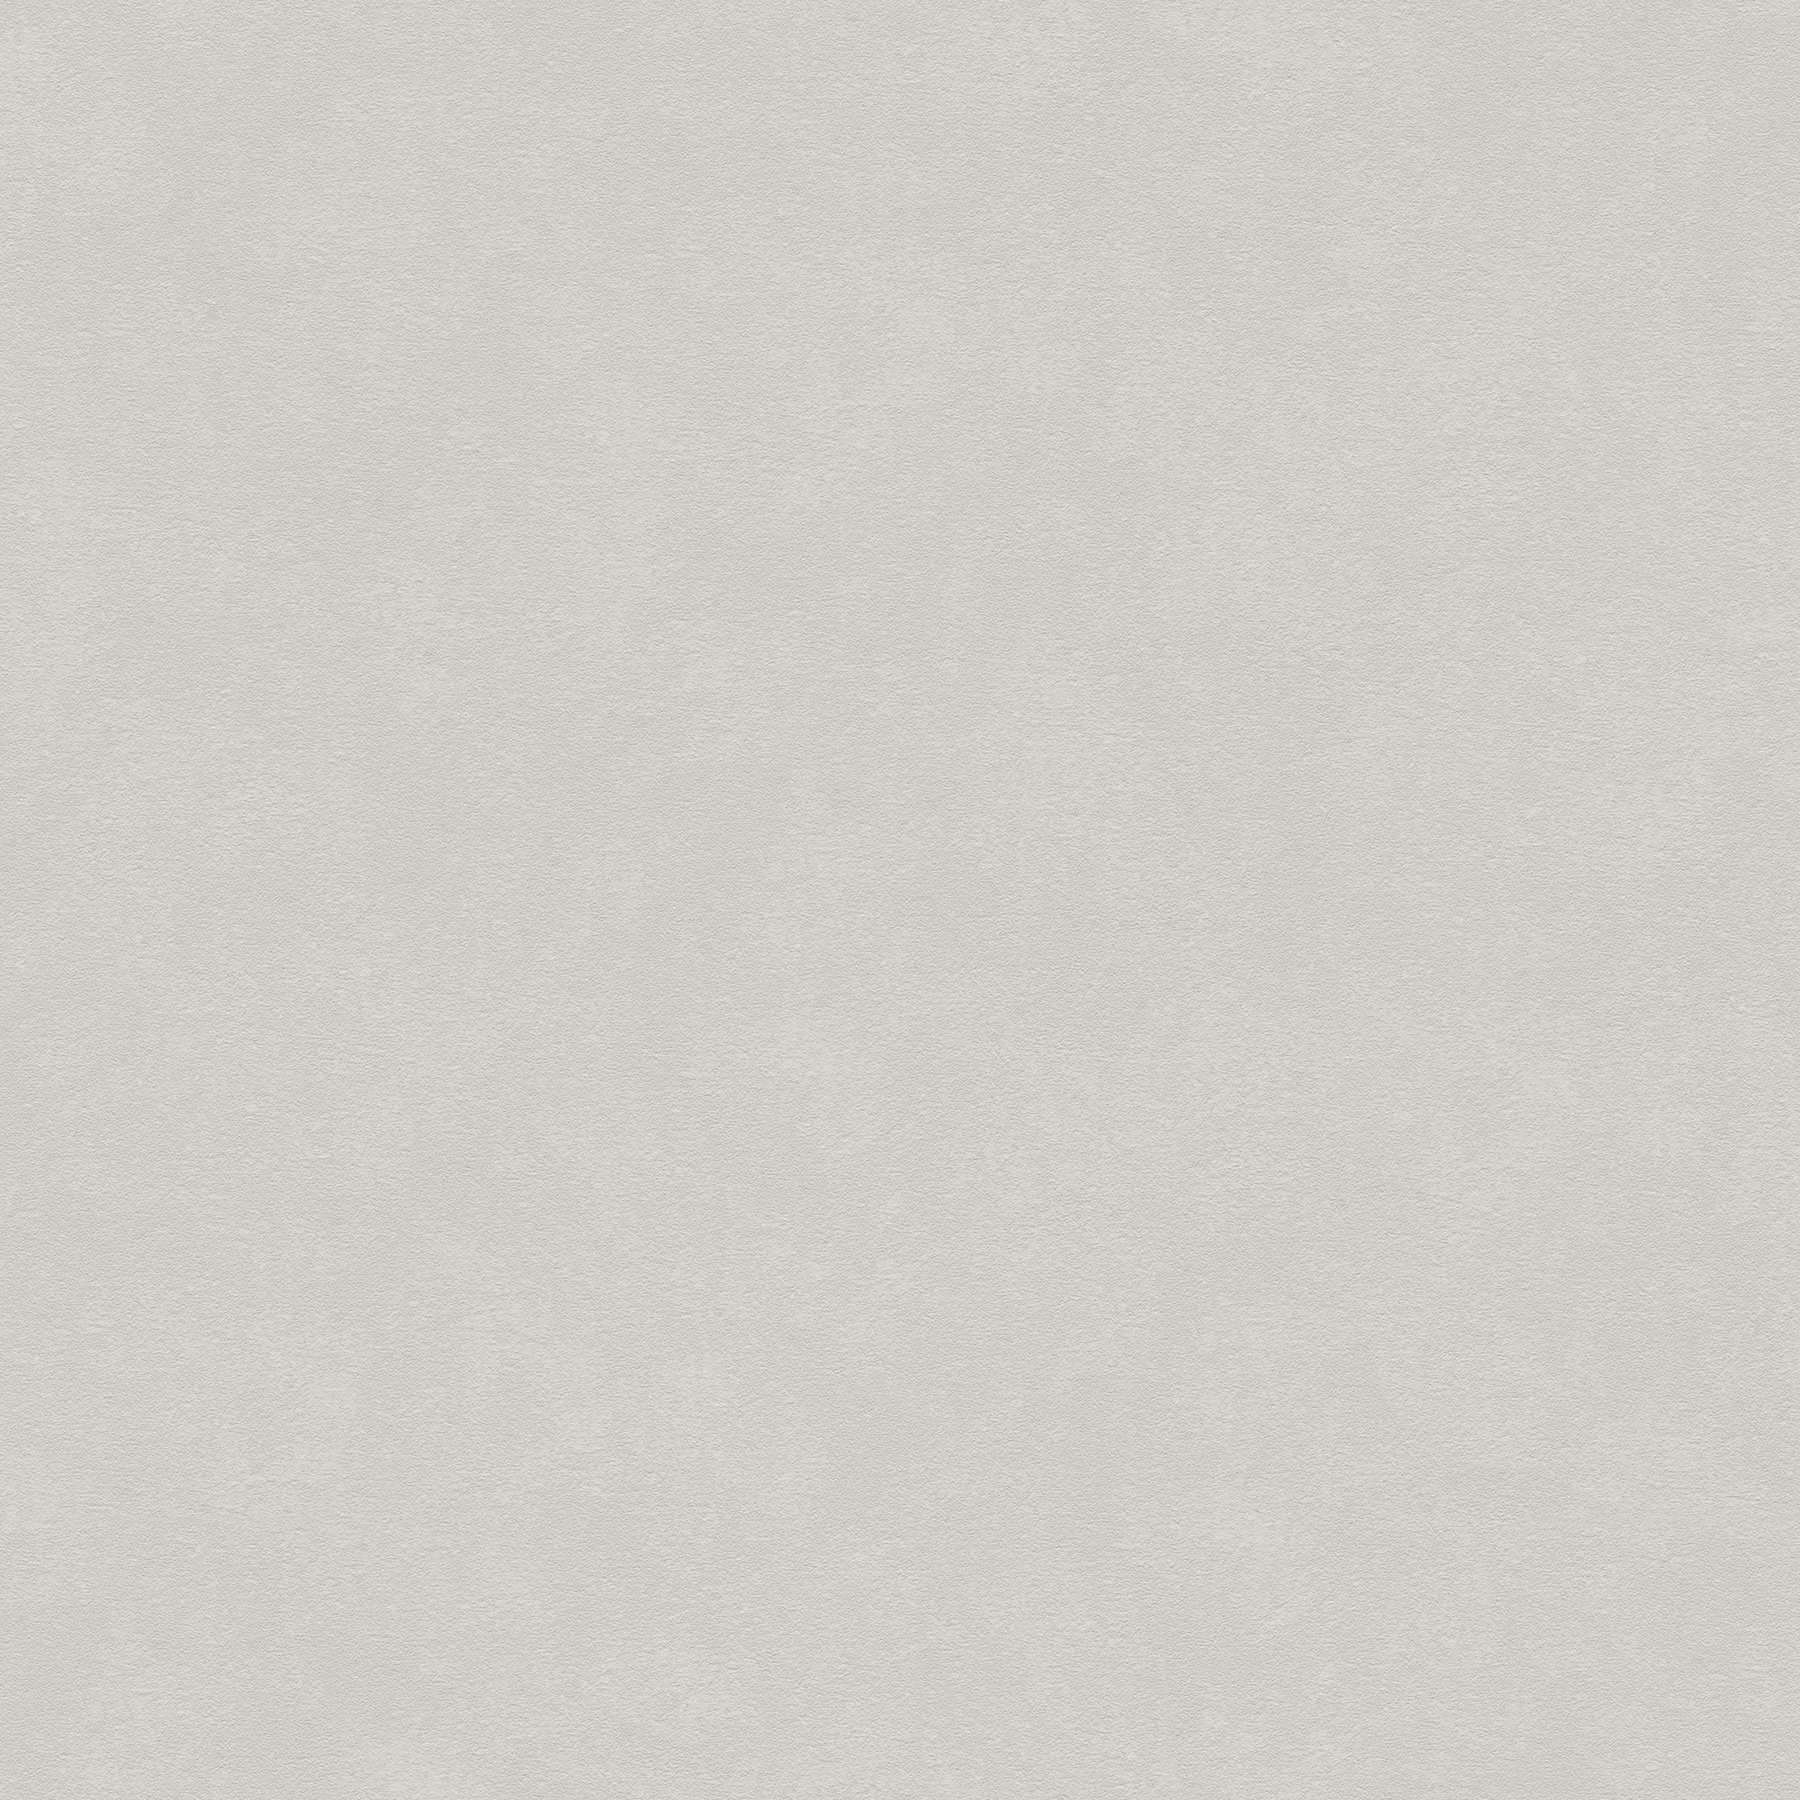 Carta da parati beige grigio chiaro con texture sottile e tratteggi di colore
